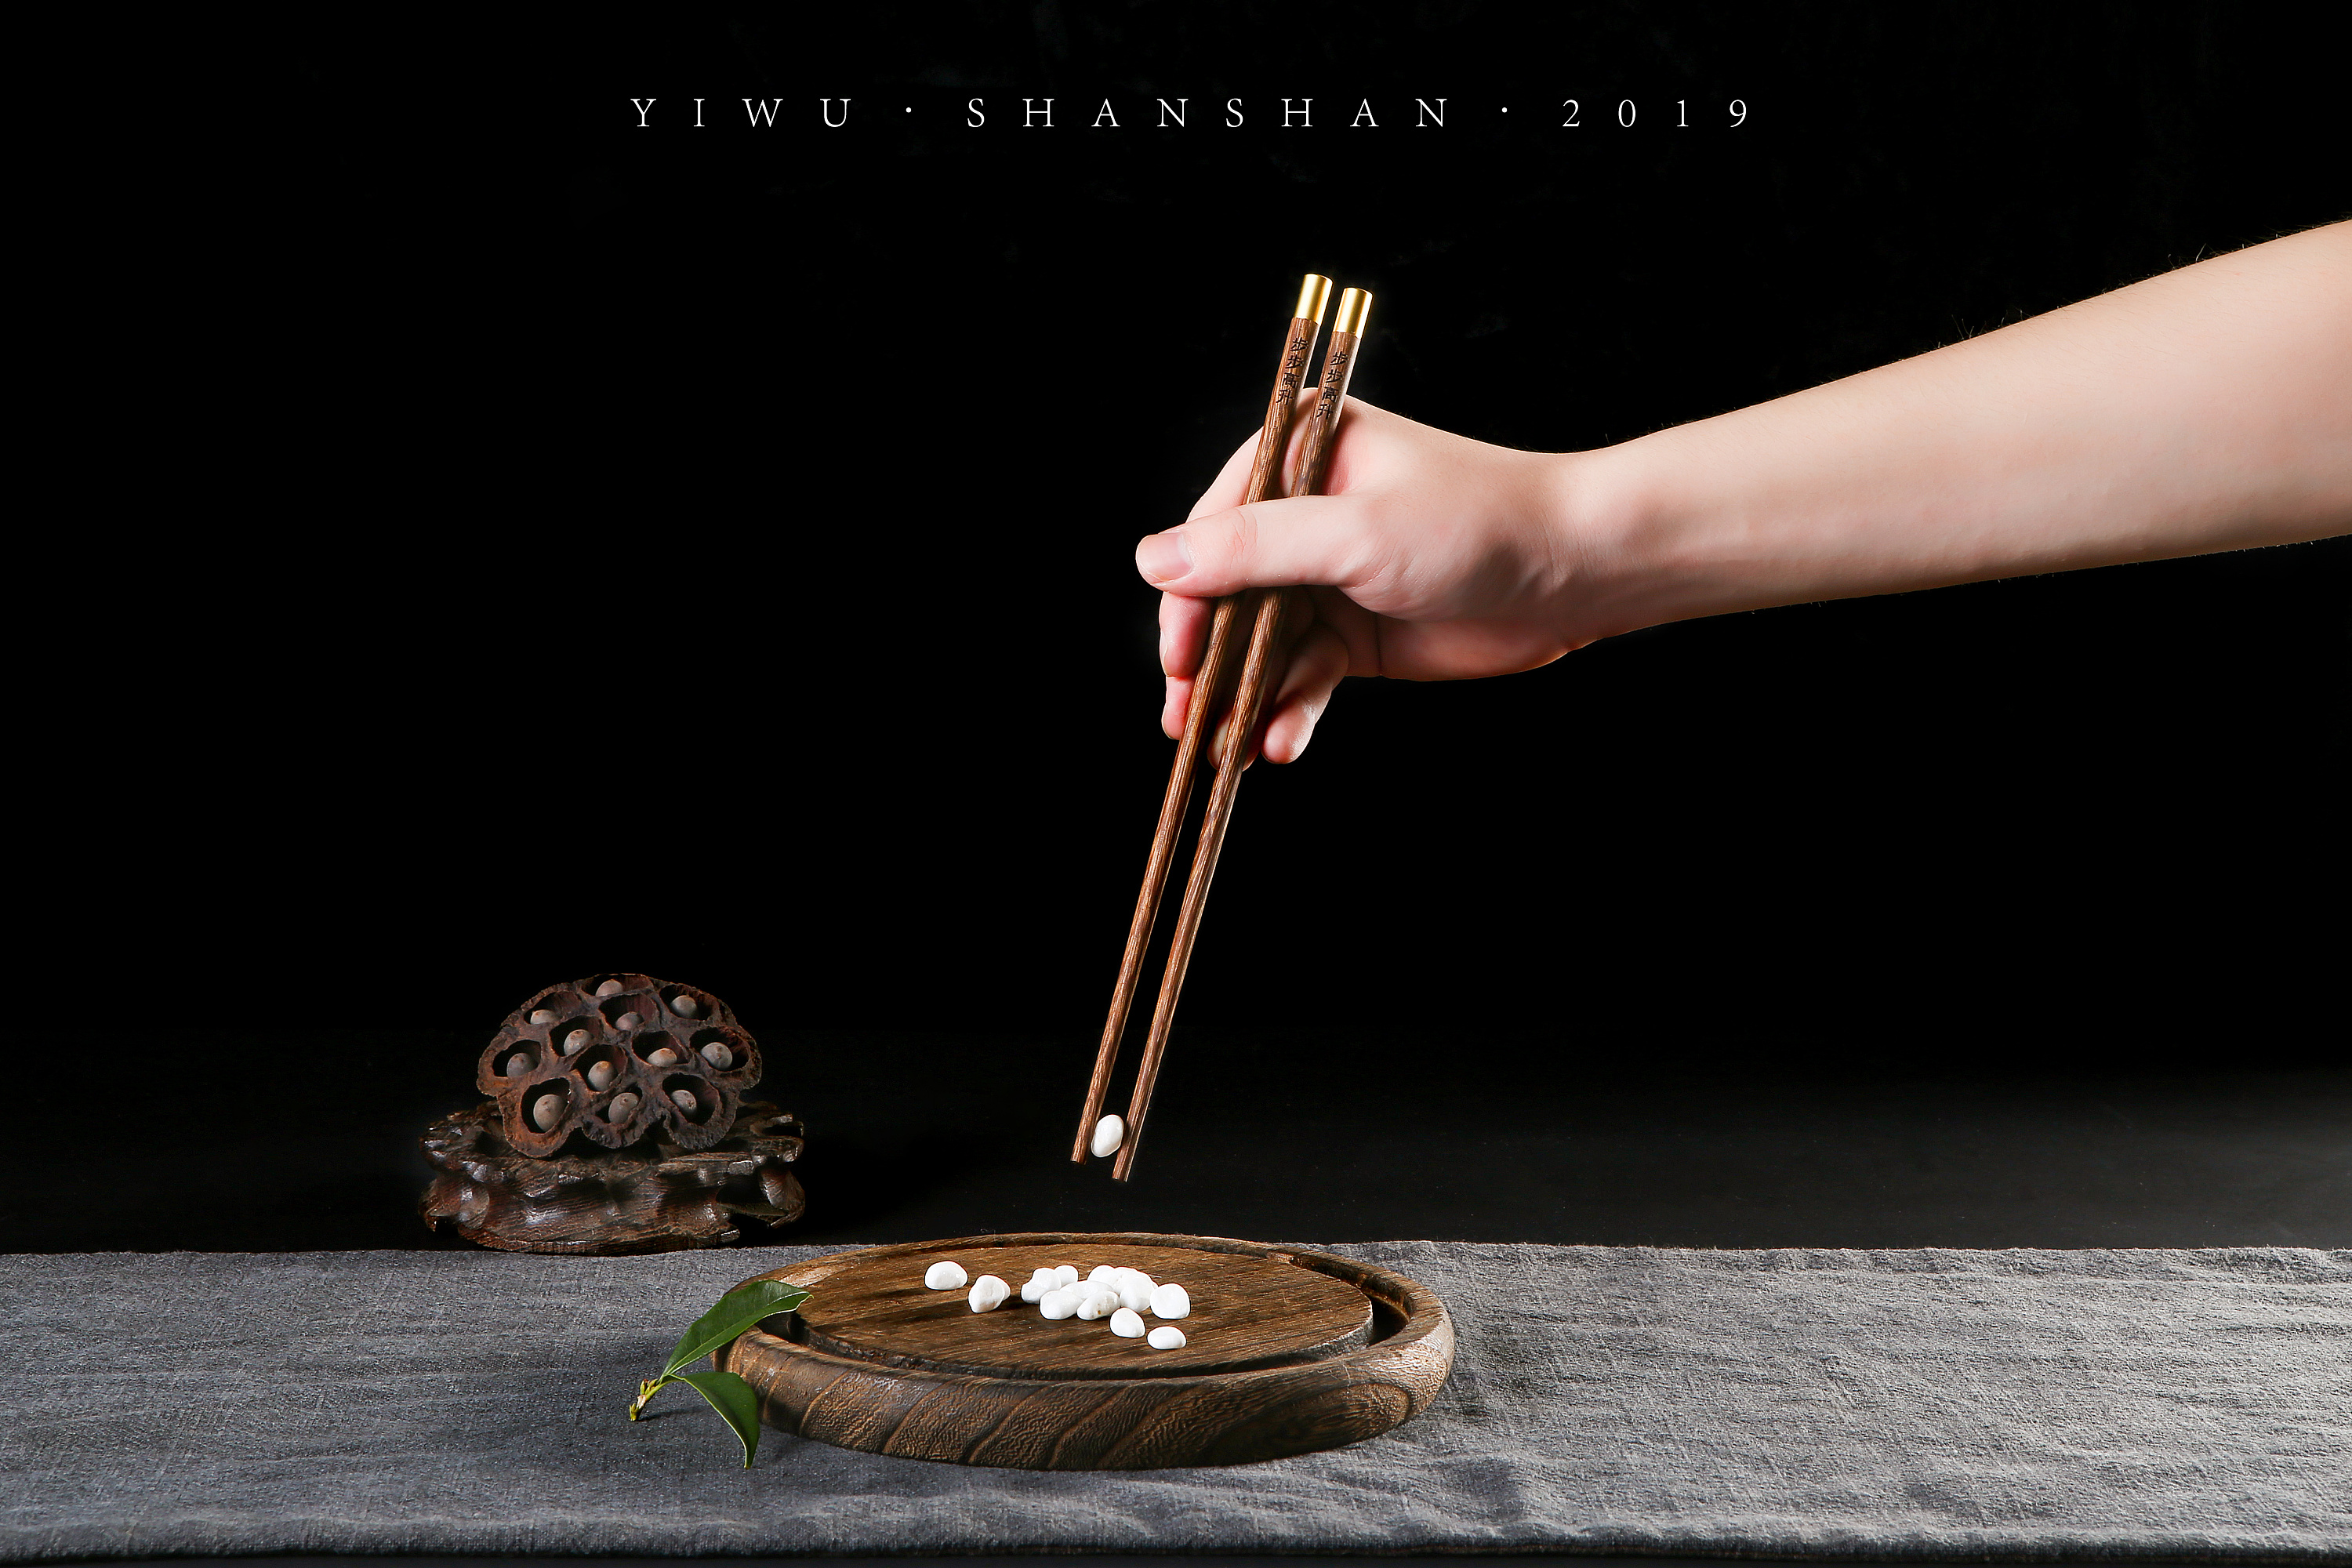 厂家批发 红木筷子中式个性创意雕刻木质筷子家用5双套装工艺筷子-阿里巴巴